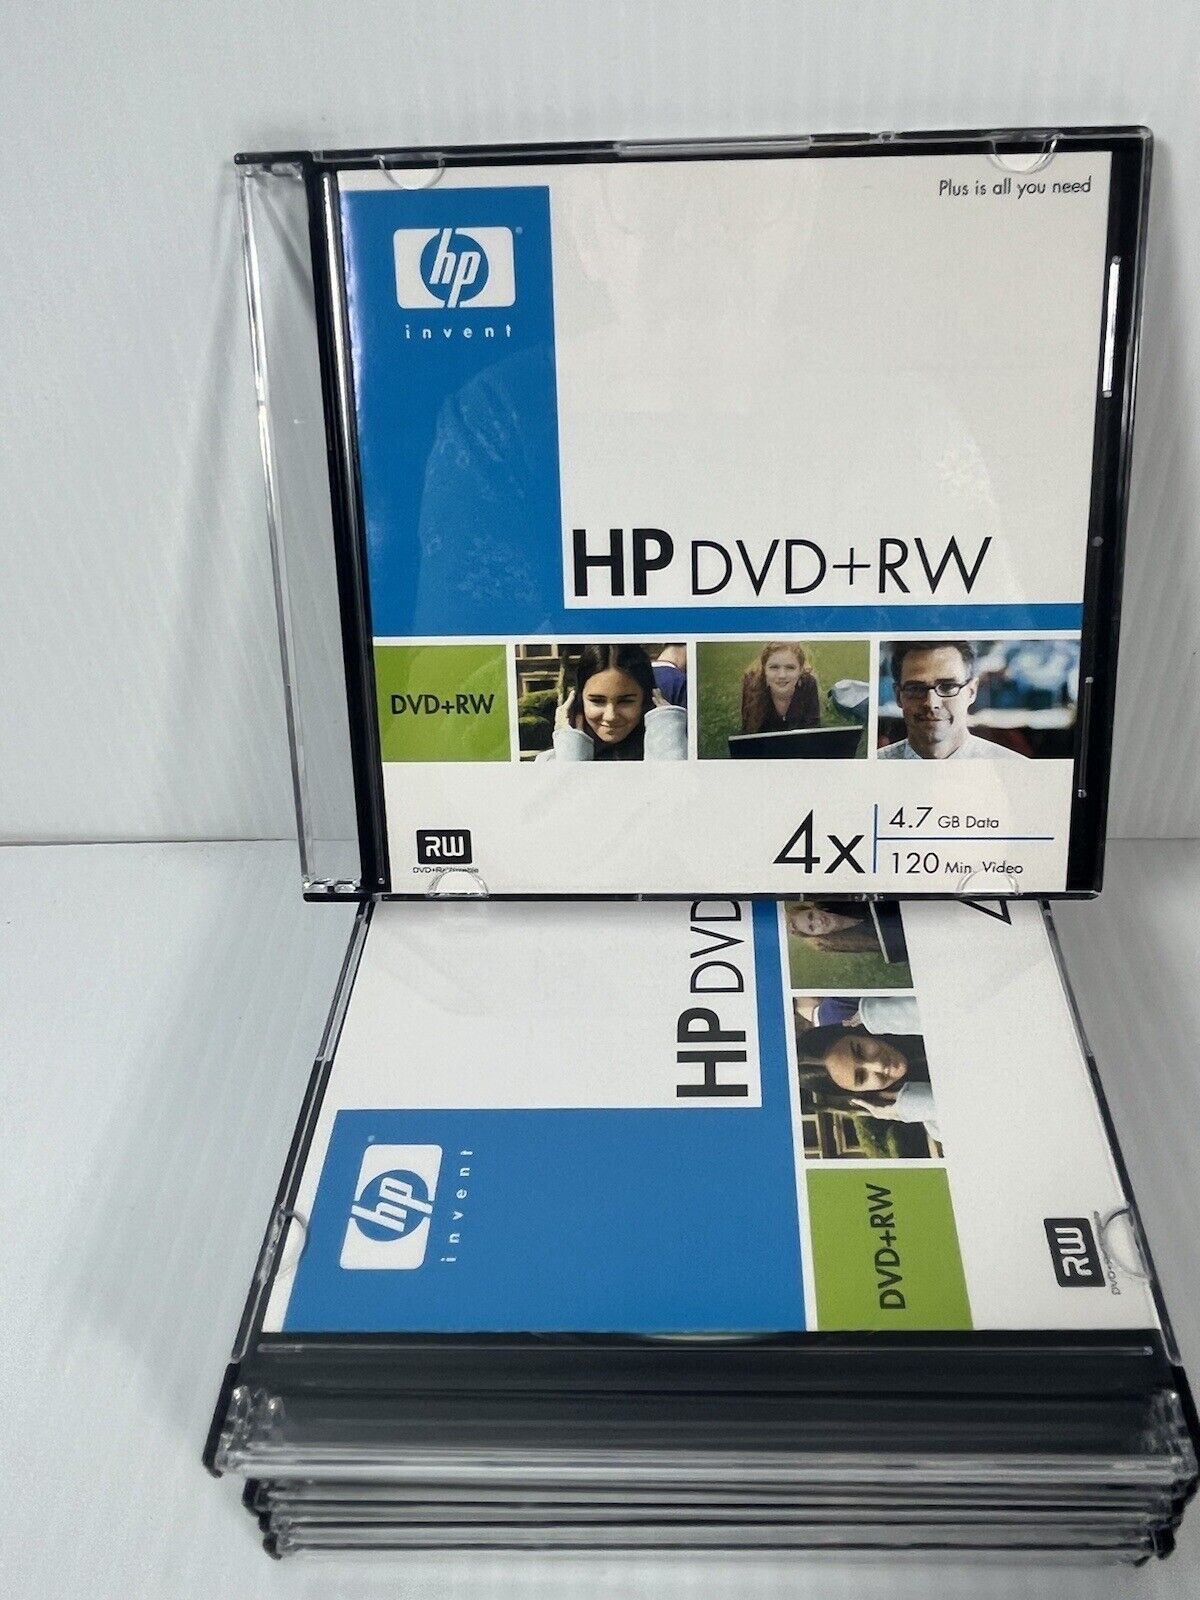 HP Invent DVD+RW 4X 4.7GB Data 120 Min Video Lot 8 DW00021M New